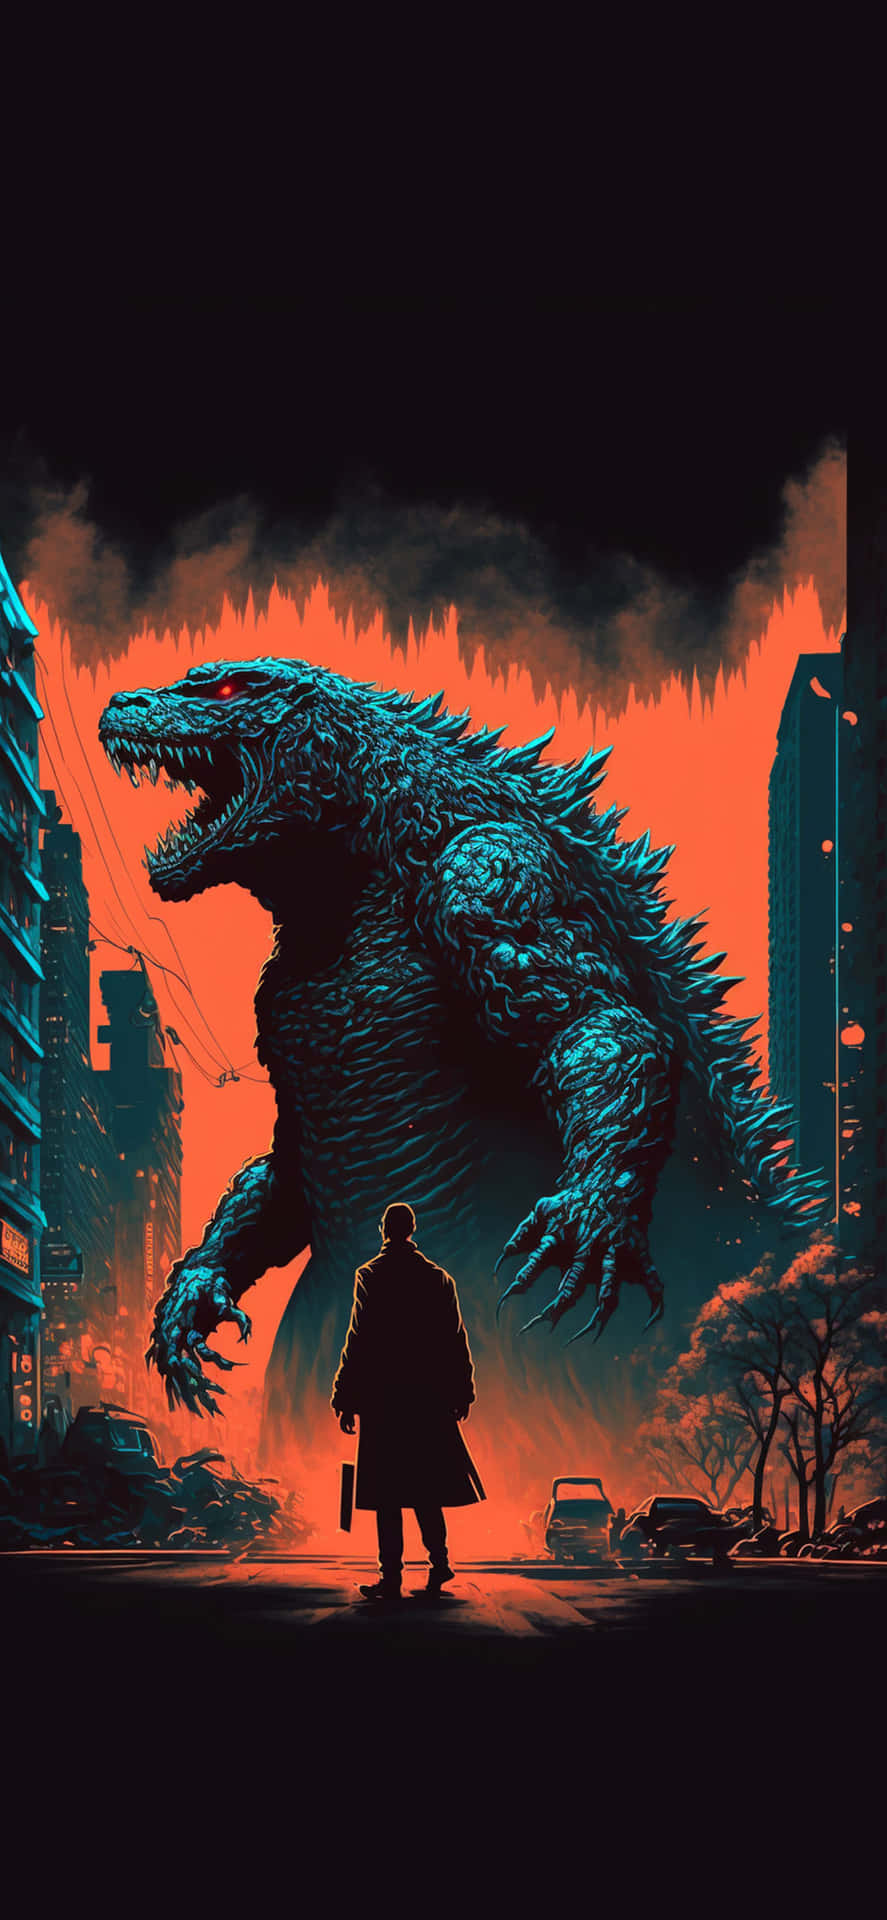 Godzillakunst In Der Stadt Mit Silhouettenbild Eines Mannes.